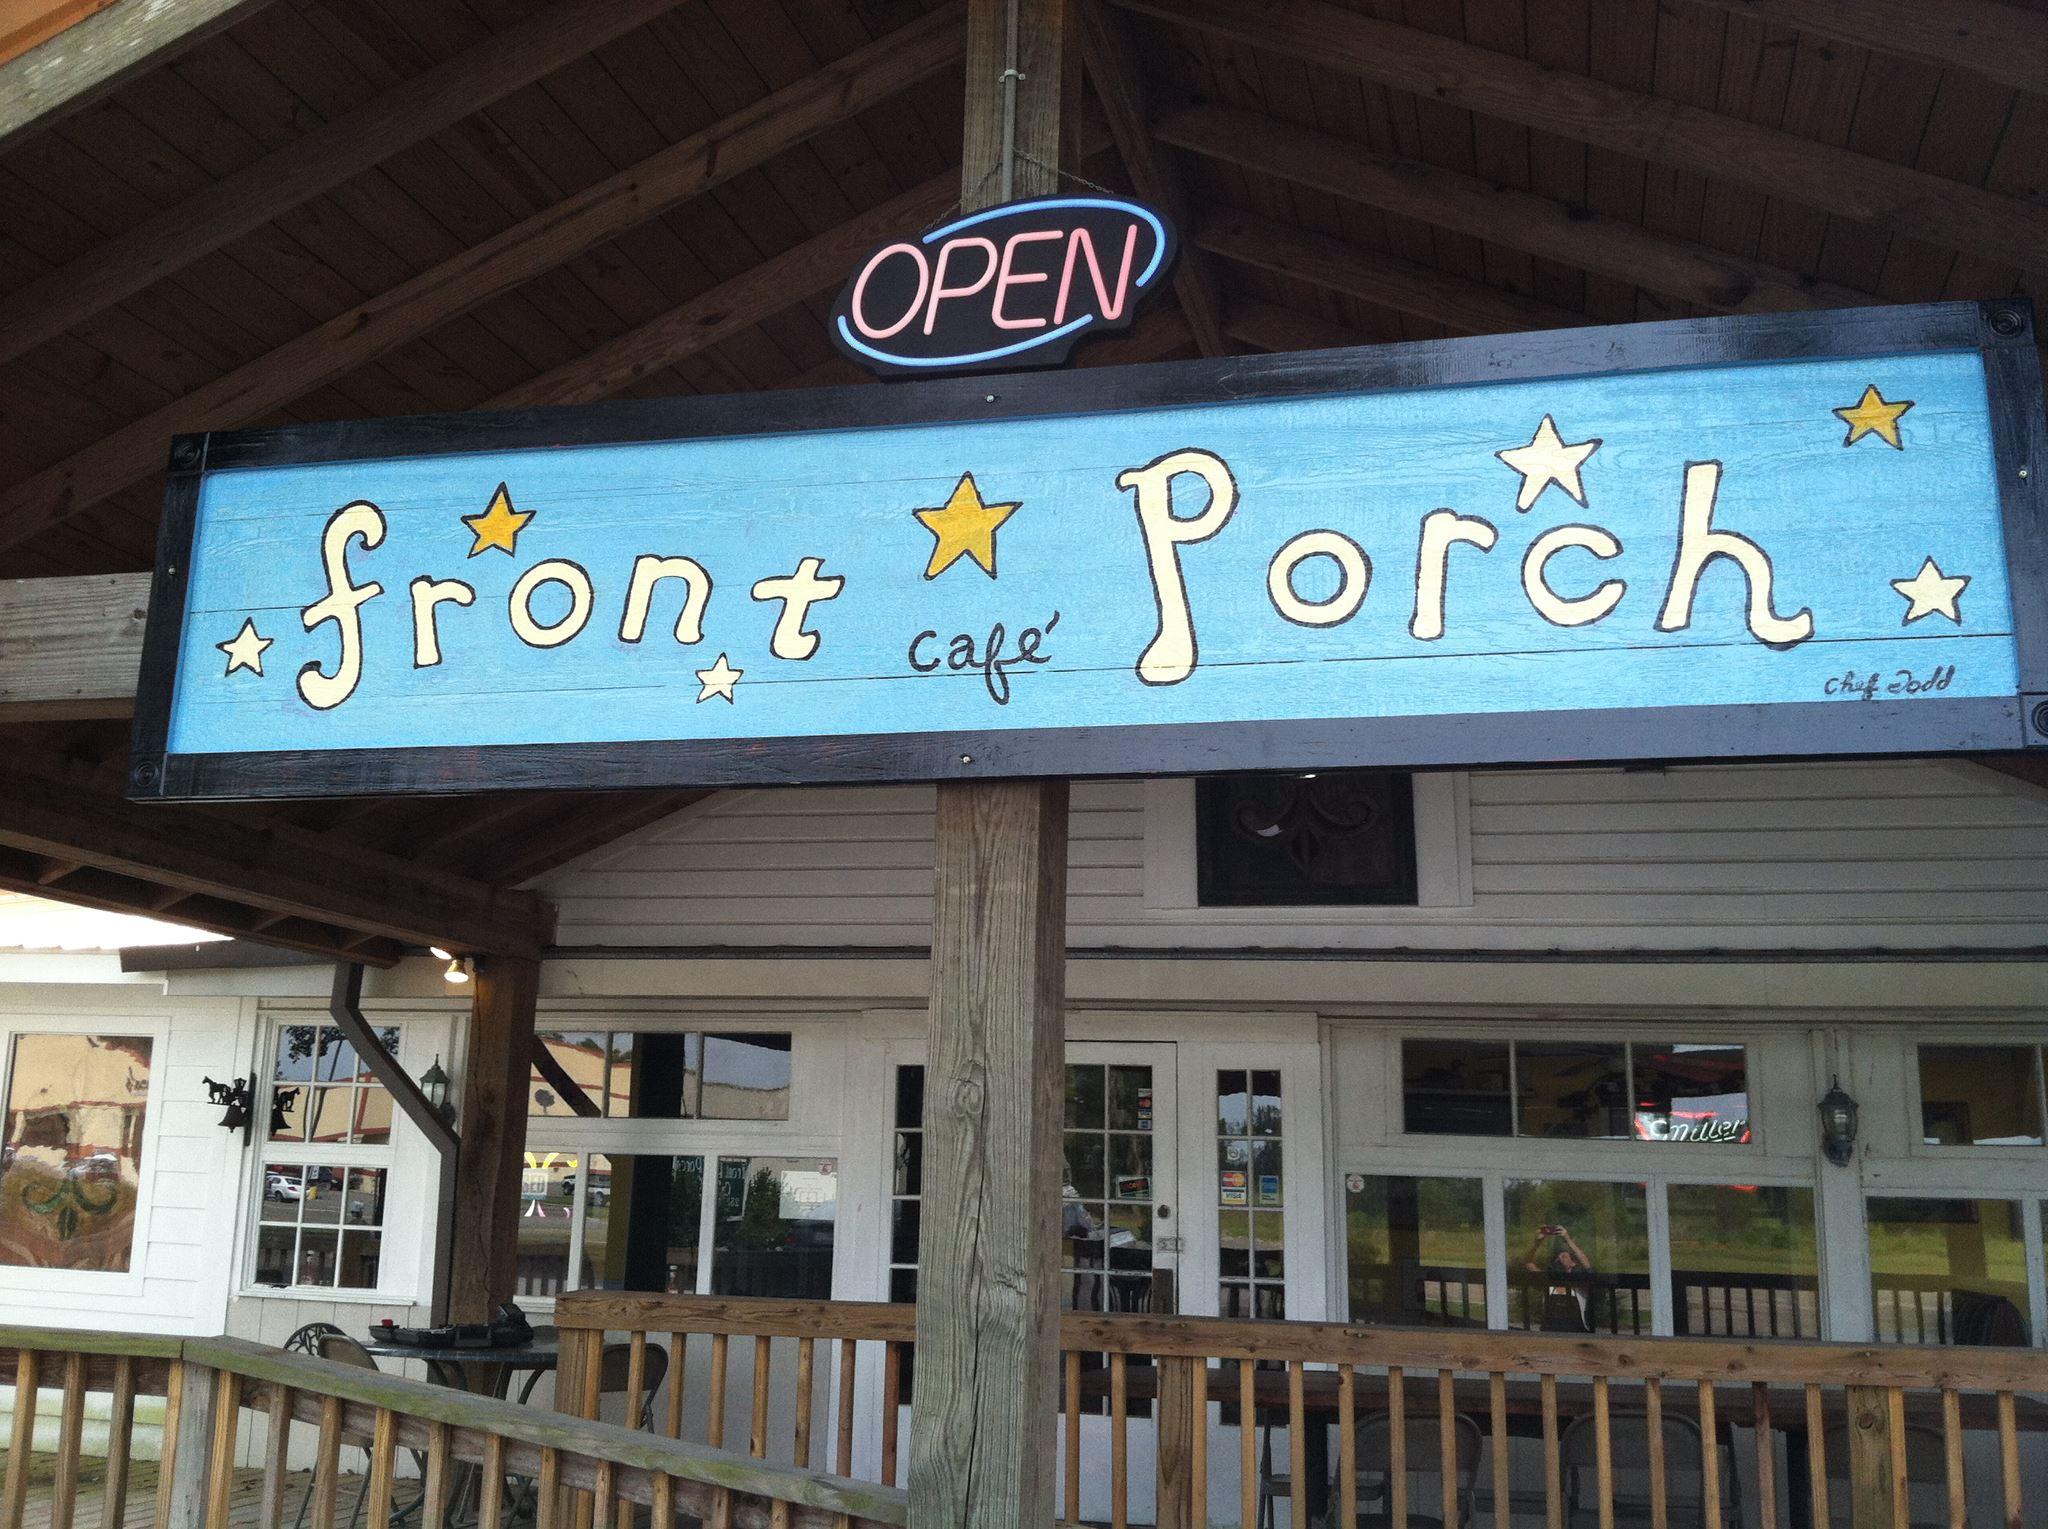 Pet Friendly Front Porch Cafe